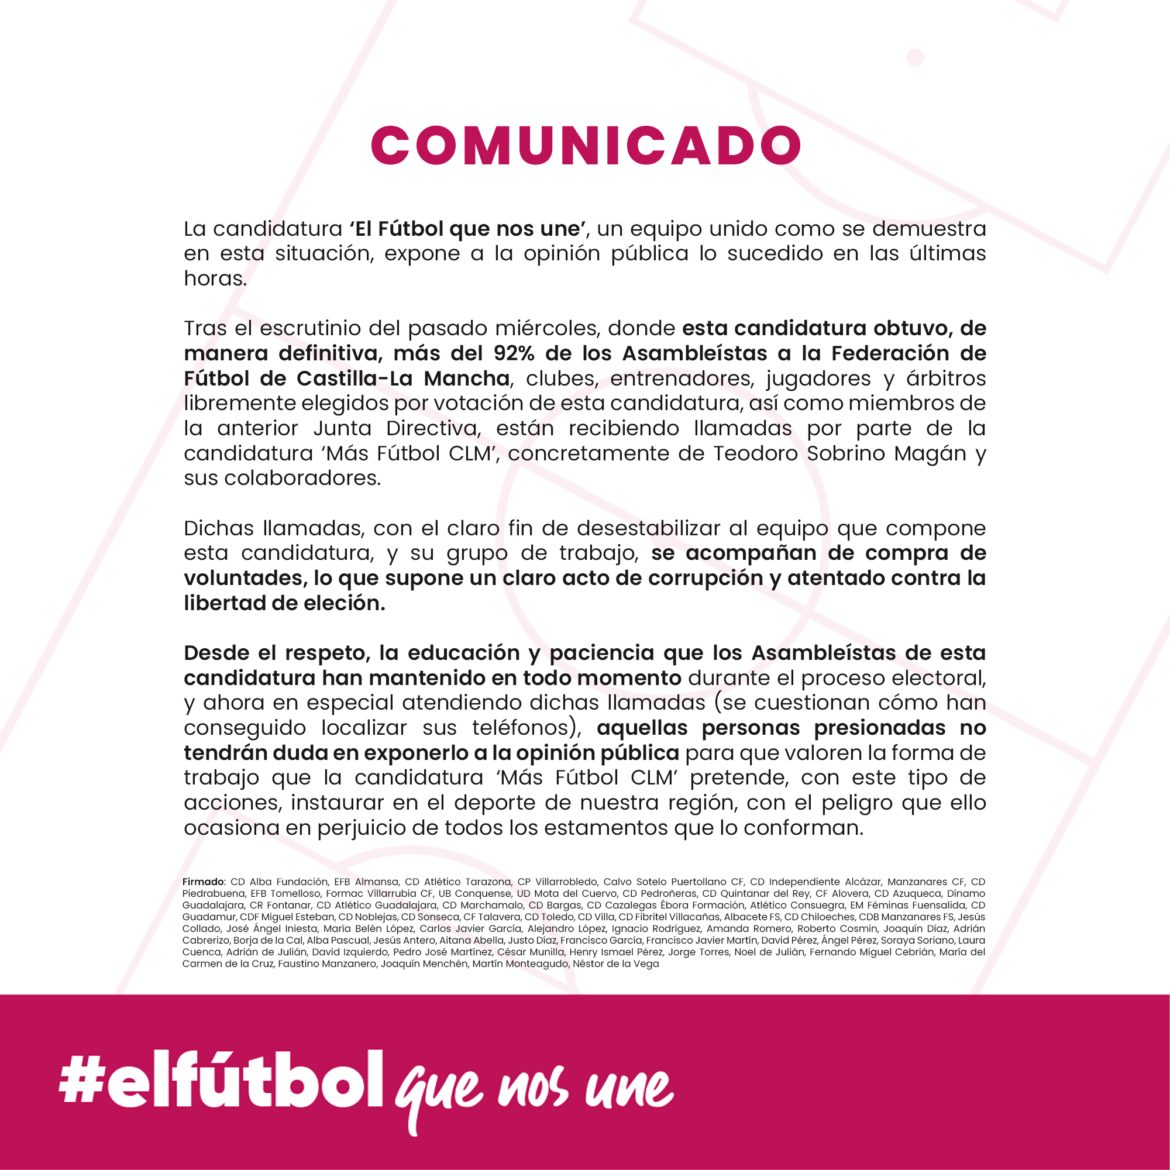 Comunicado oficial de la candidatura "El Fútbol que nos une"